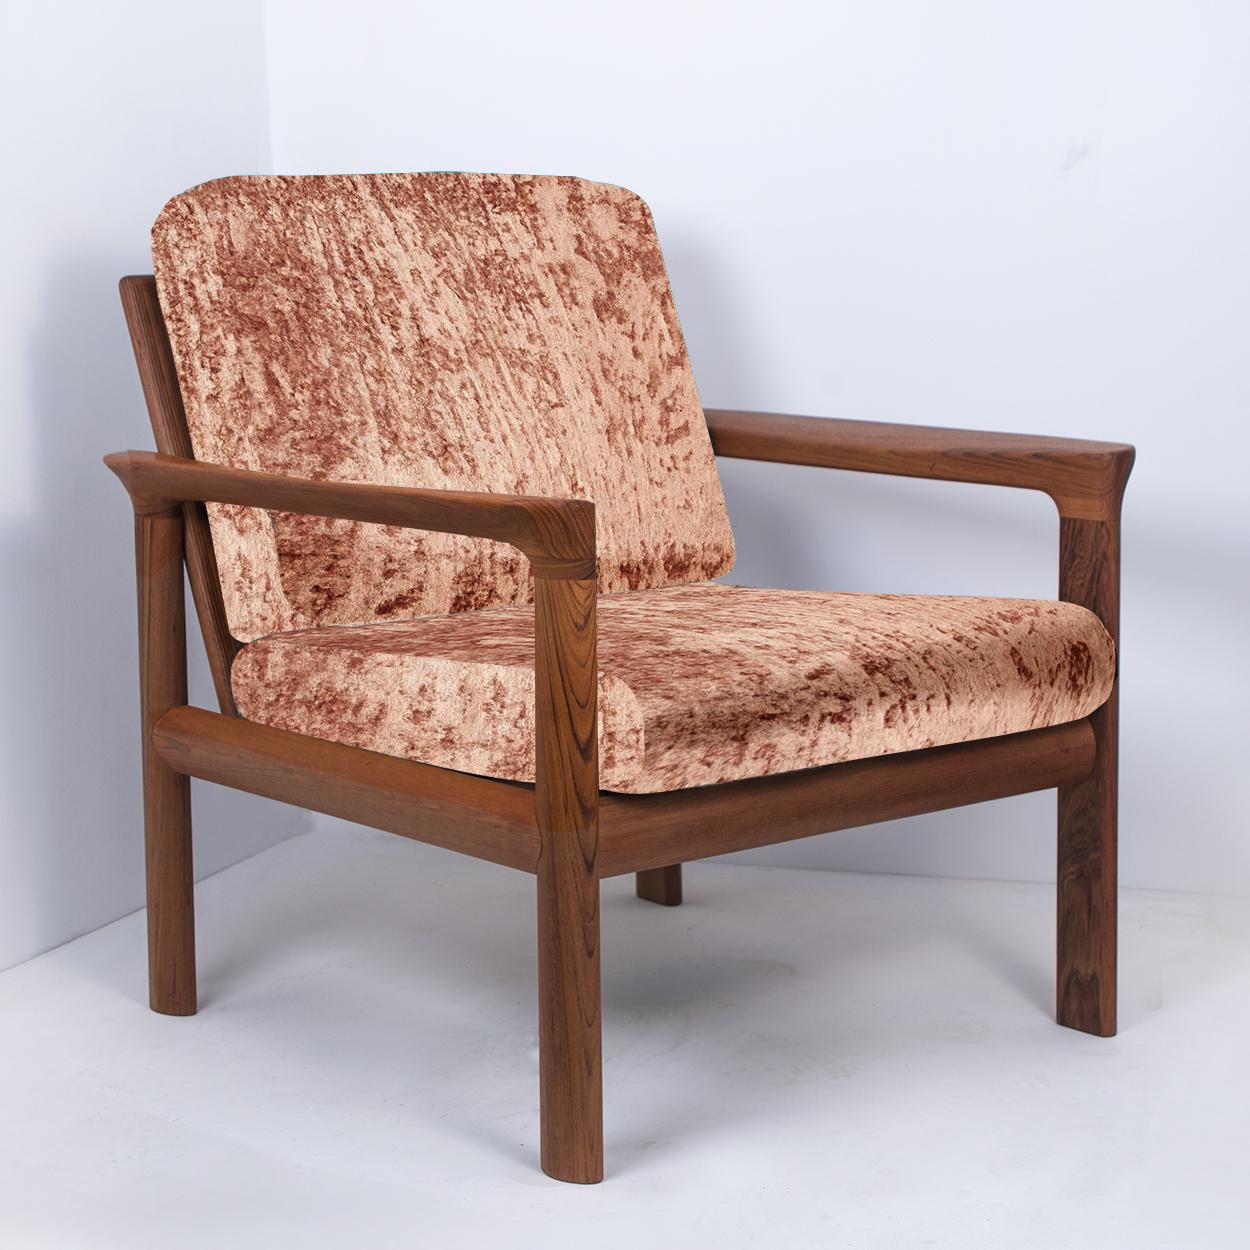 Danish Pair of New Velvet Upholstered Sculptural Easy Chairs by Sven Ellekaer, 1960s For Sale